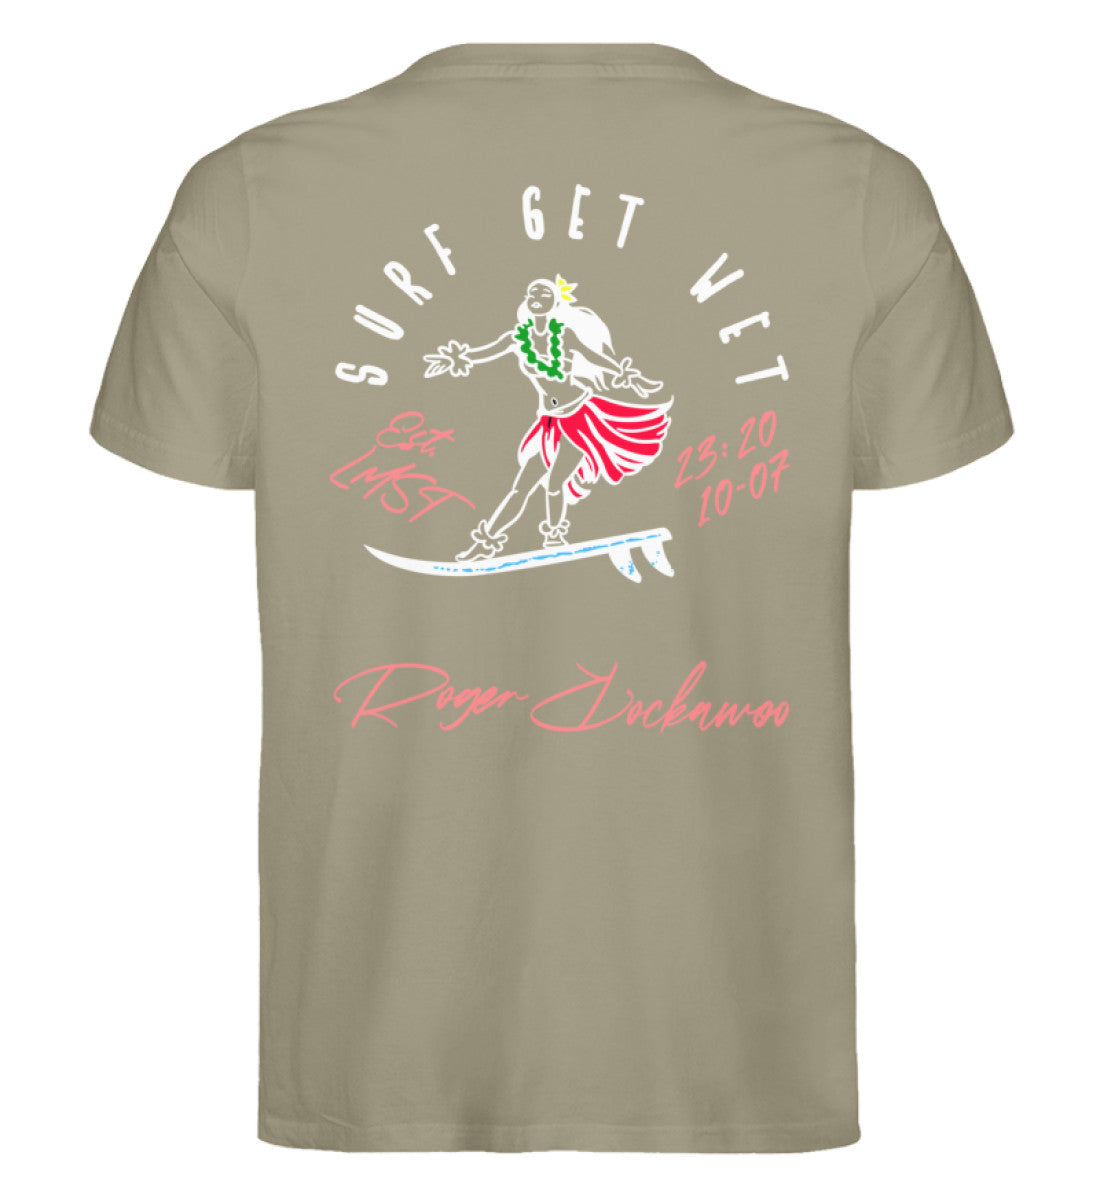 Khaki T-Shirt für Frauen und Männer bedruckt mit dem Design der Roger Rockawoo surf get wet